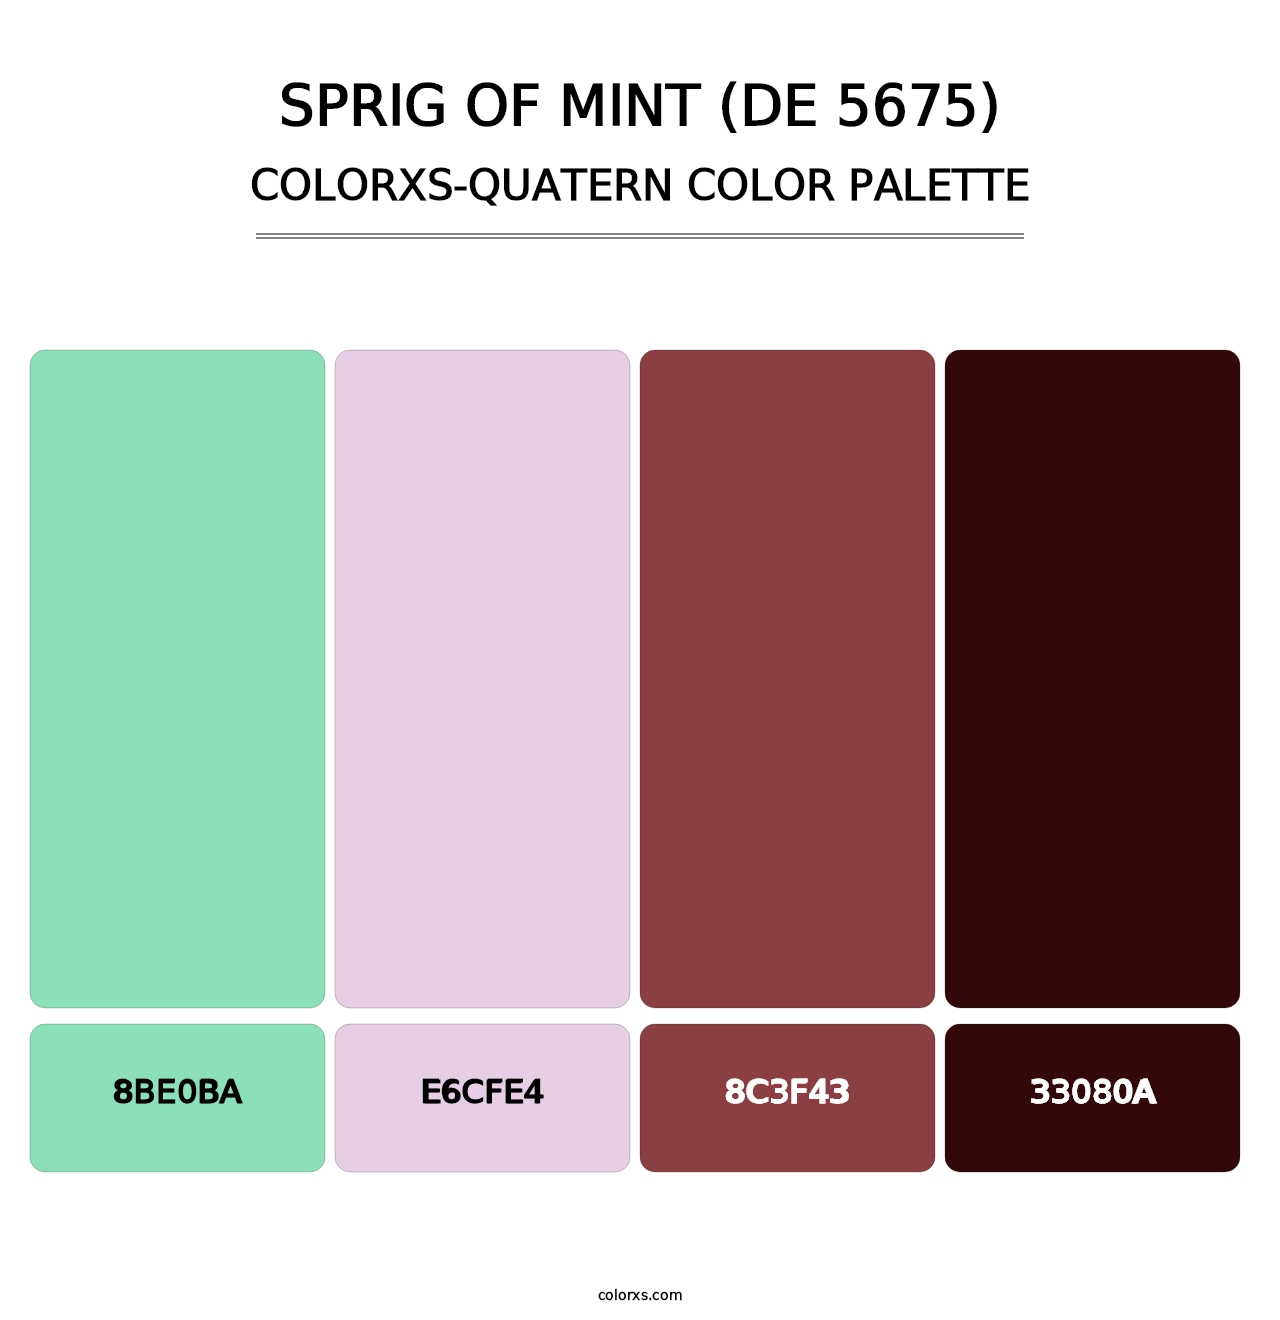 Sprig of Mint (DE 5675) - Colorxs Quatern Palette